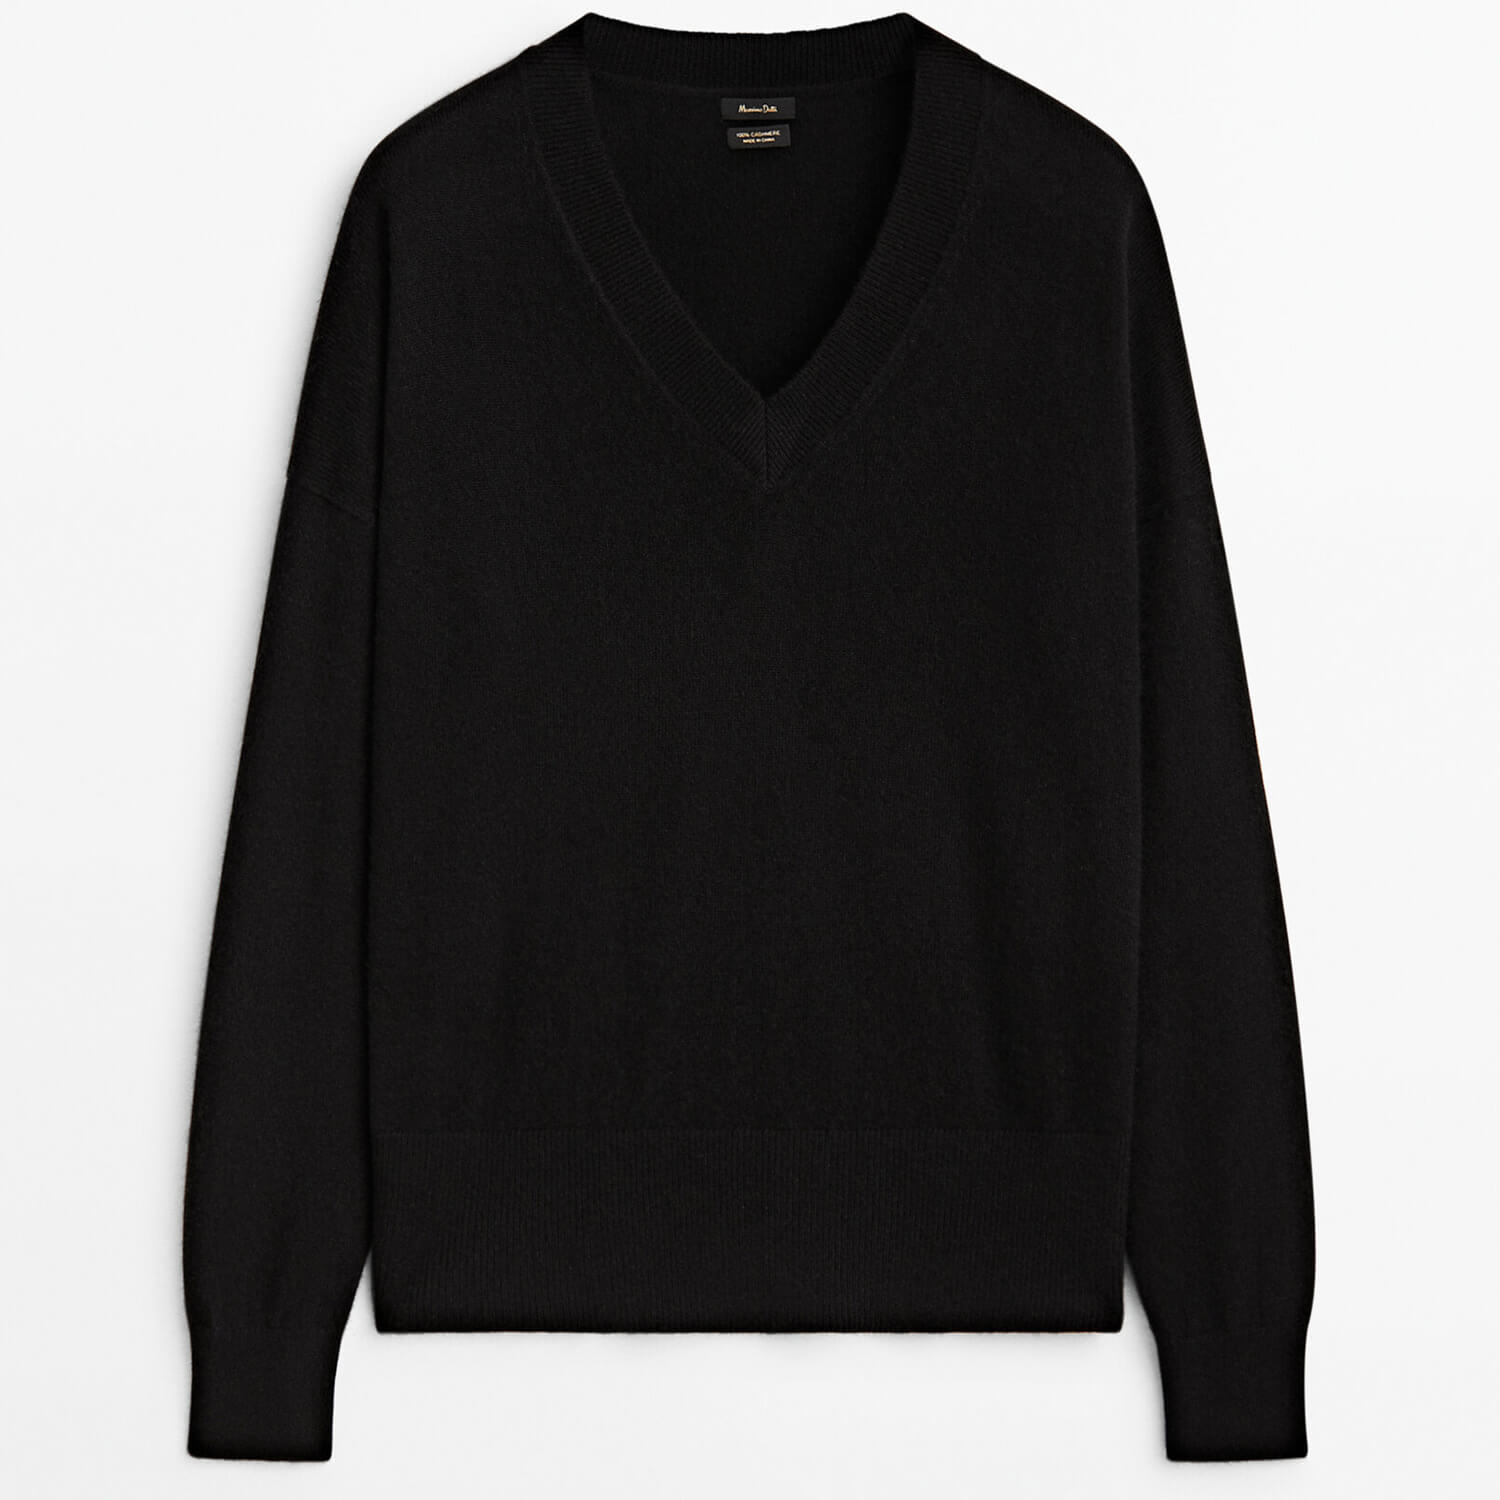 Свитер Massimo Dutti 100% Cashmere V-Neck, черный свитер massimo dutti 100% cashmere crew neck кремовый